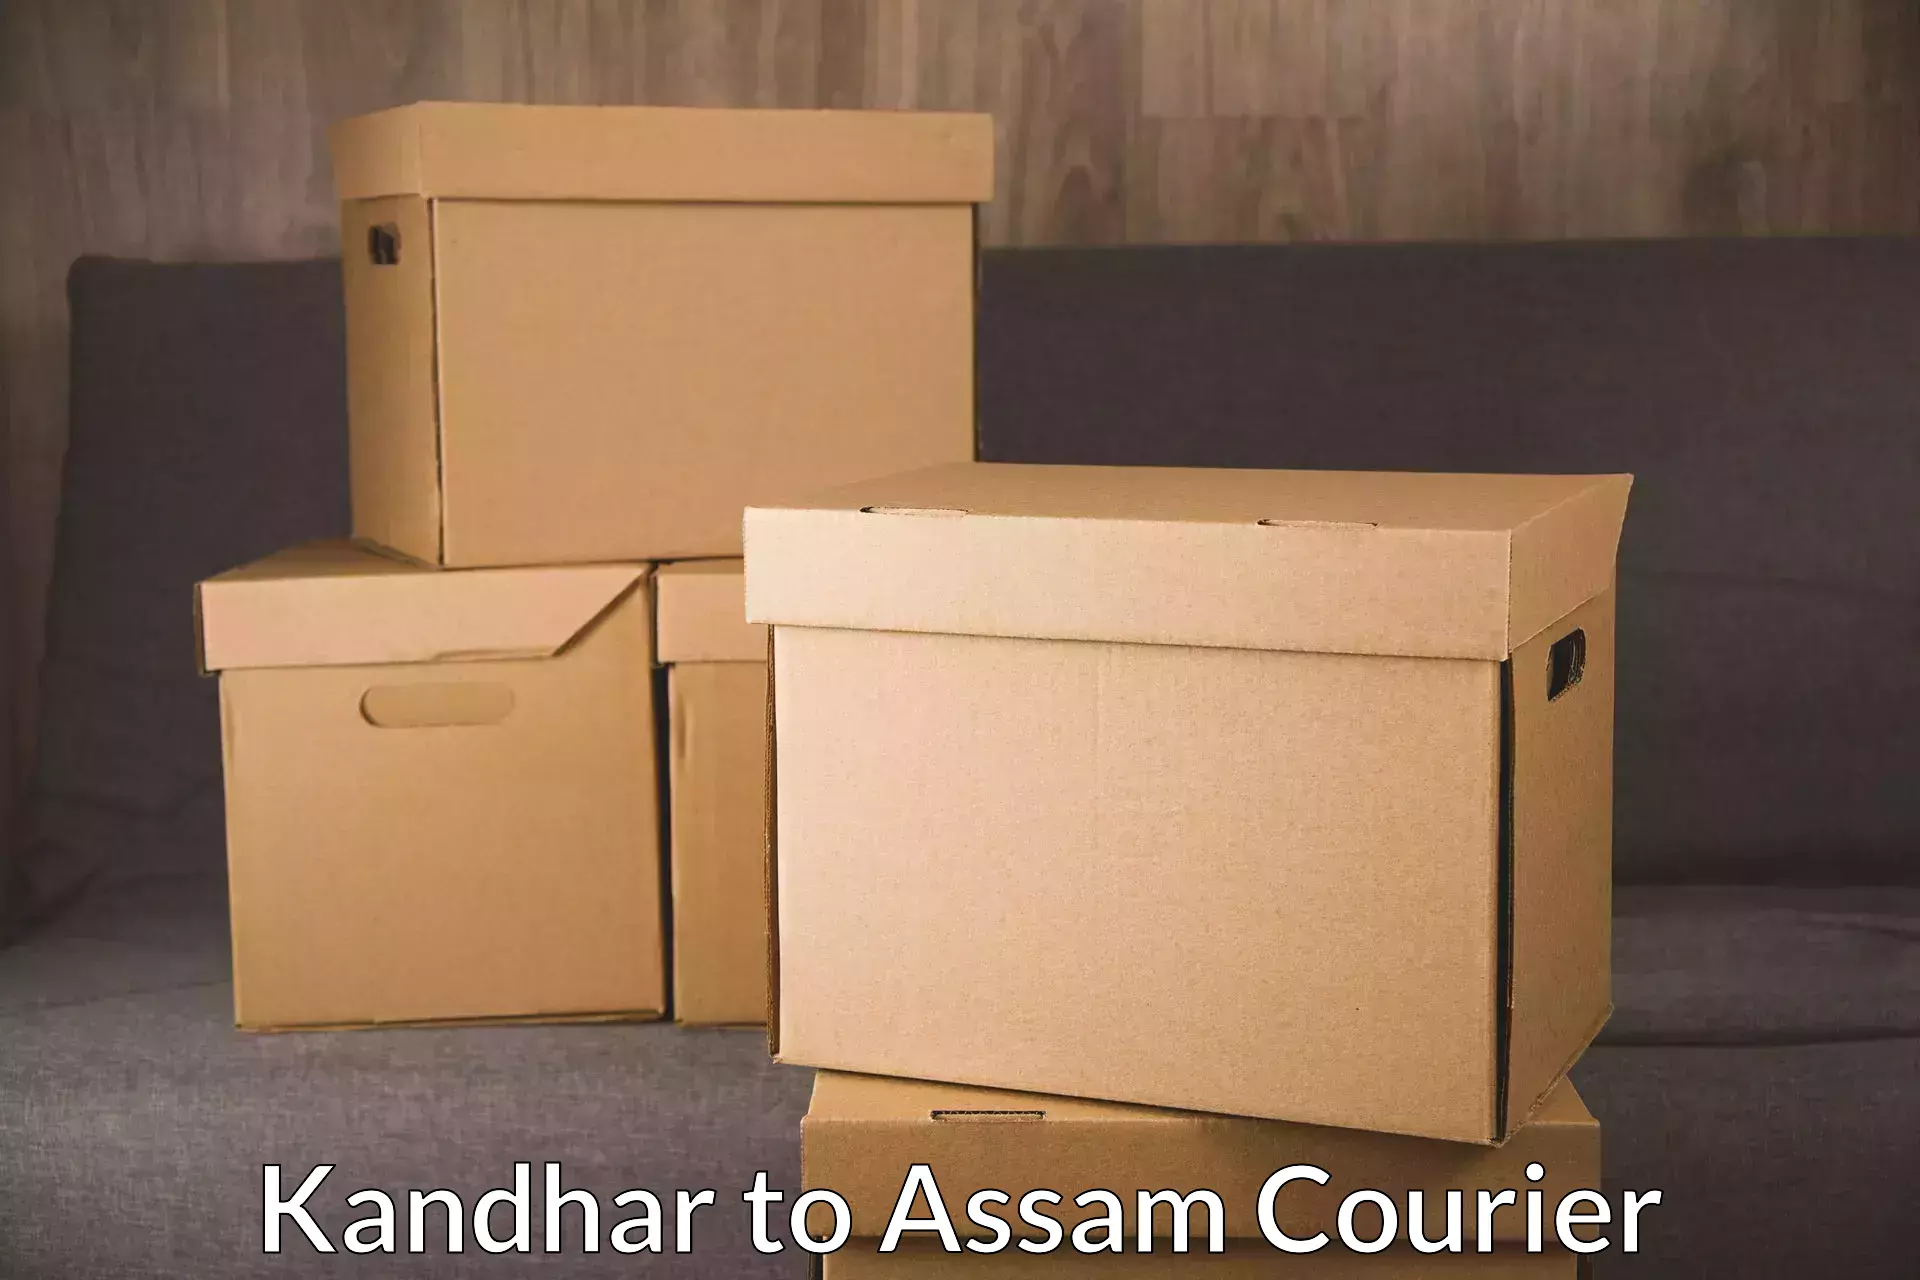 Parcel service for businesses Kandhar to Lala Assam